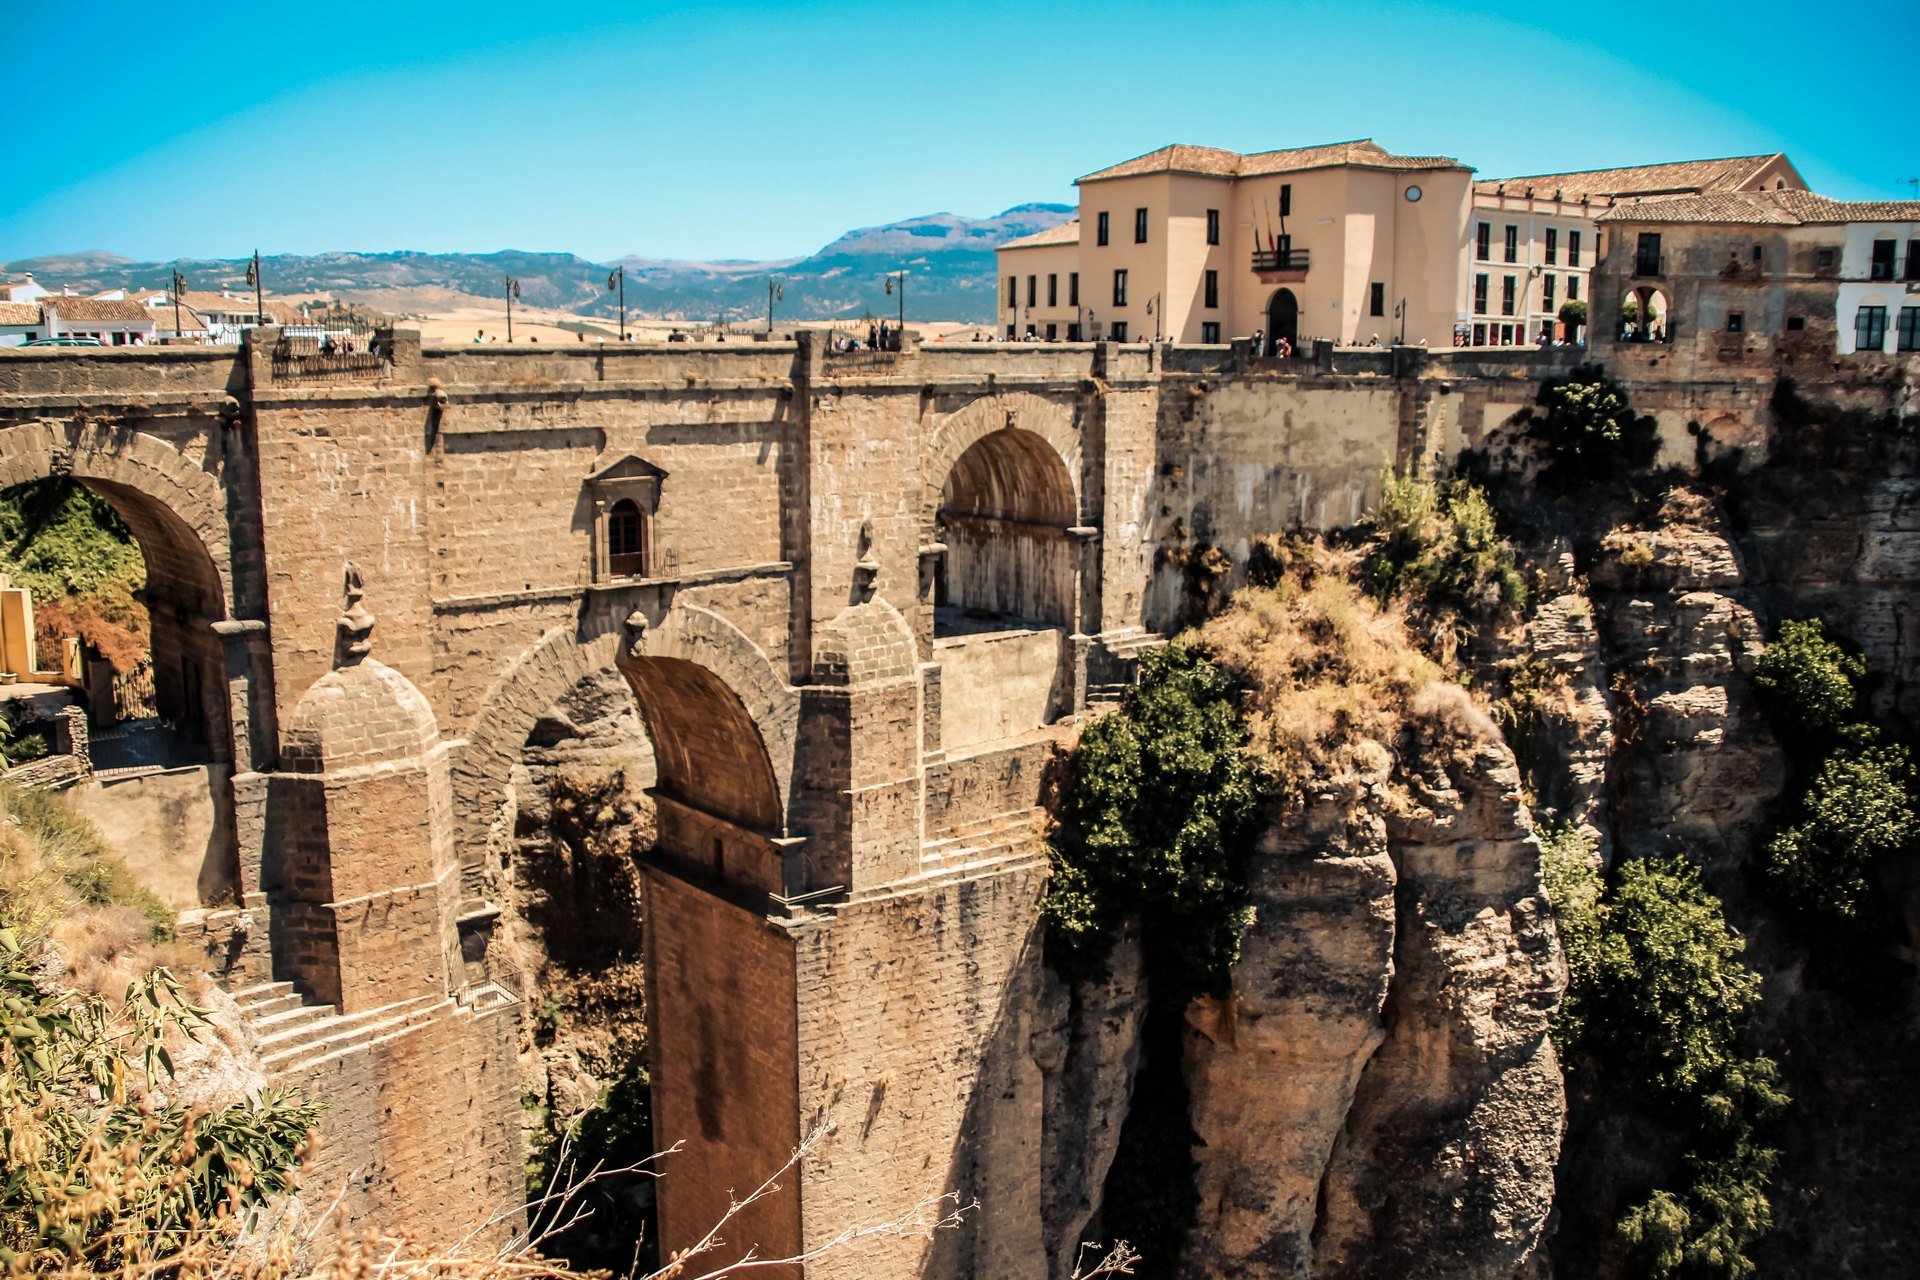 Miasta i świątynie na skałach — Ronda w Hiszpanii